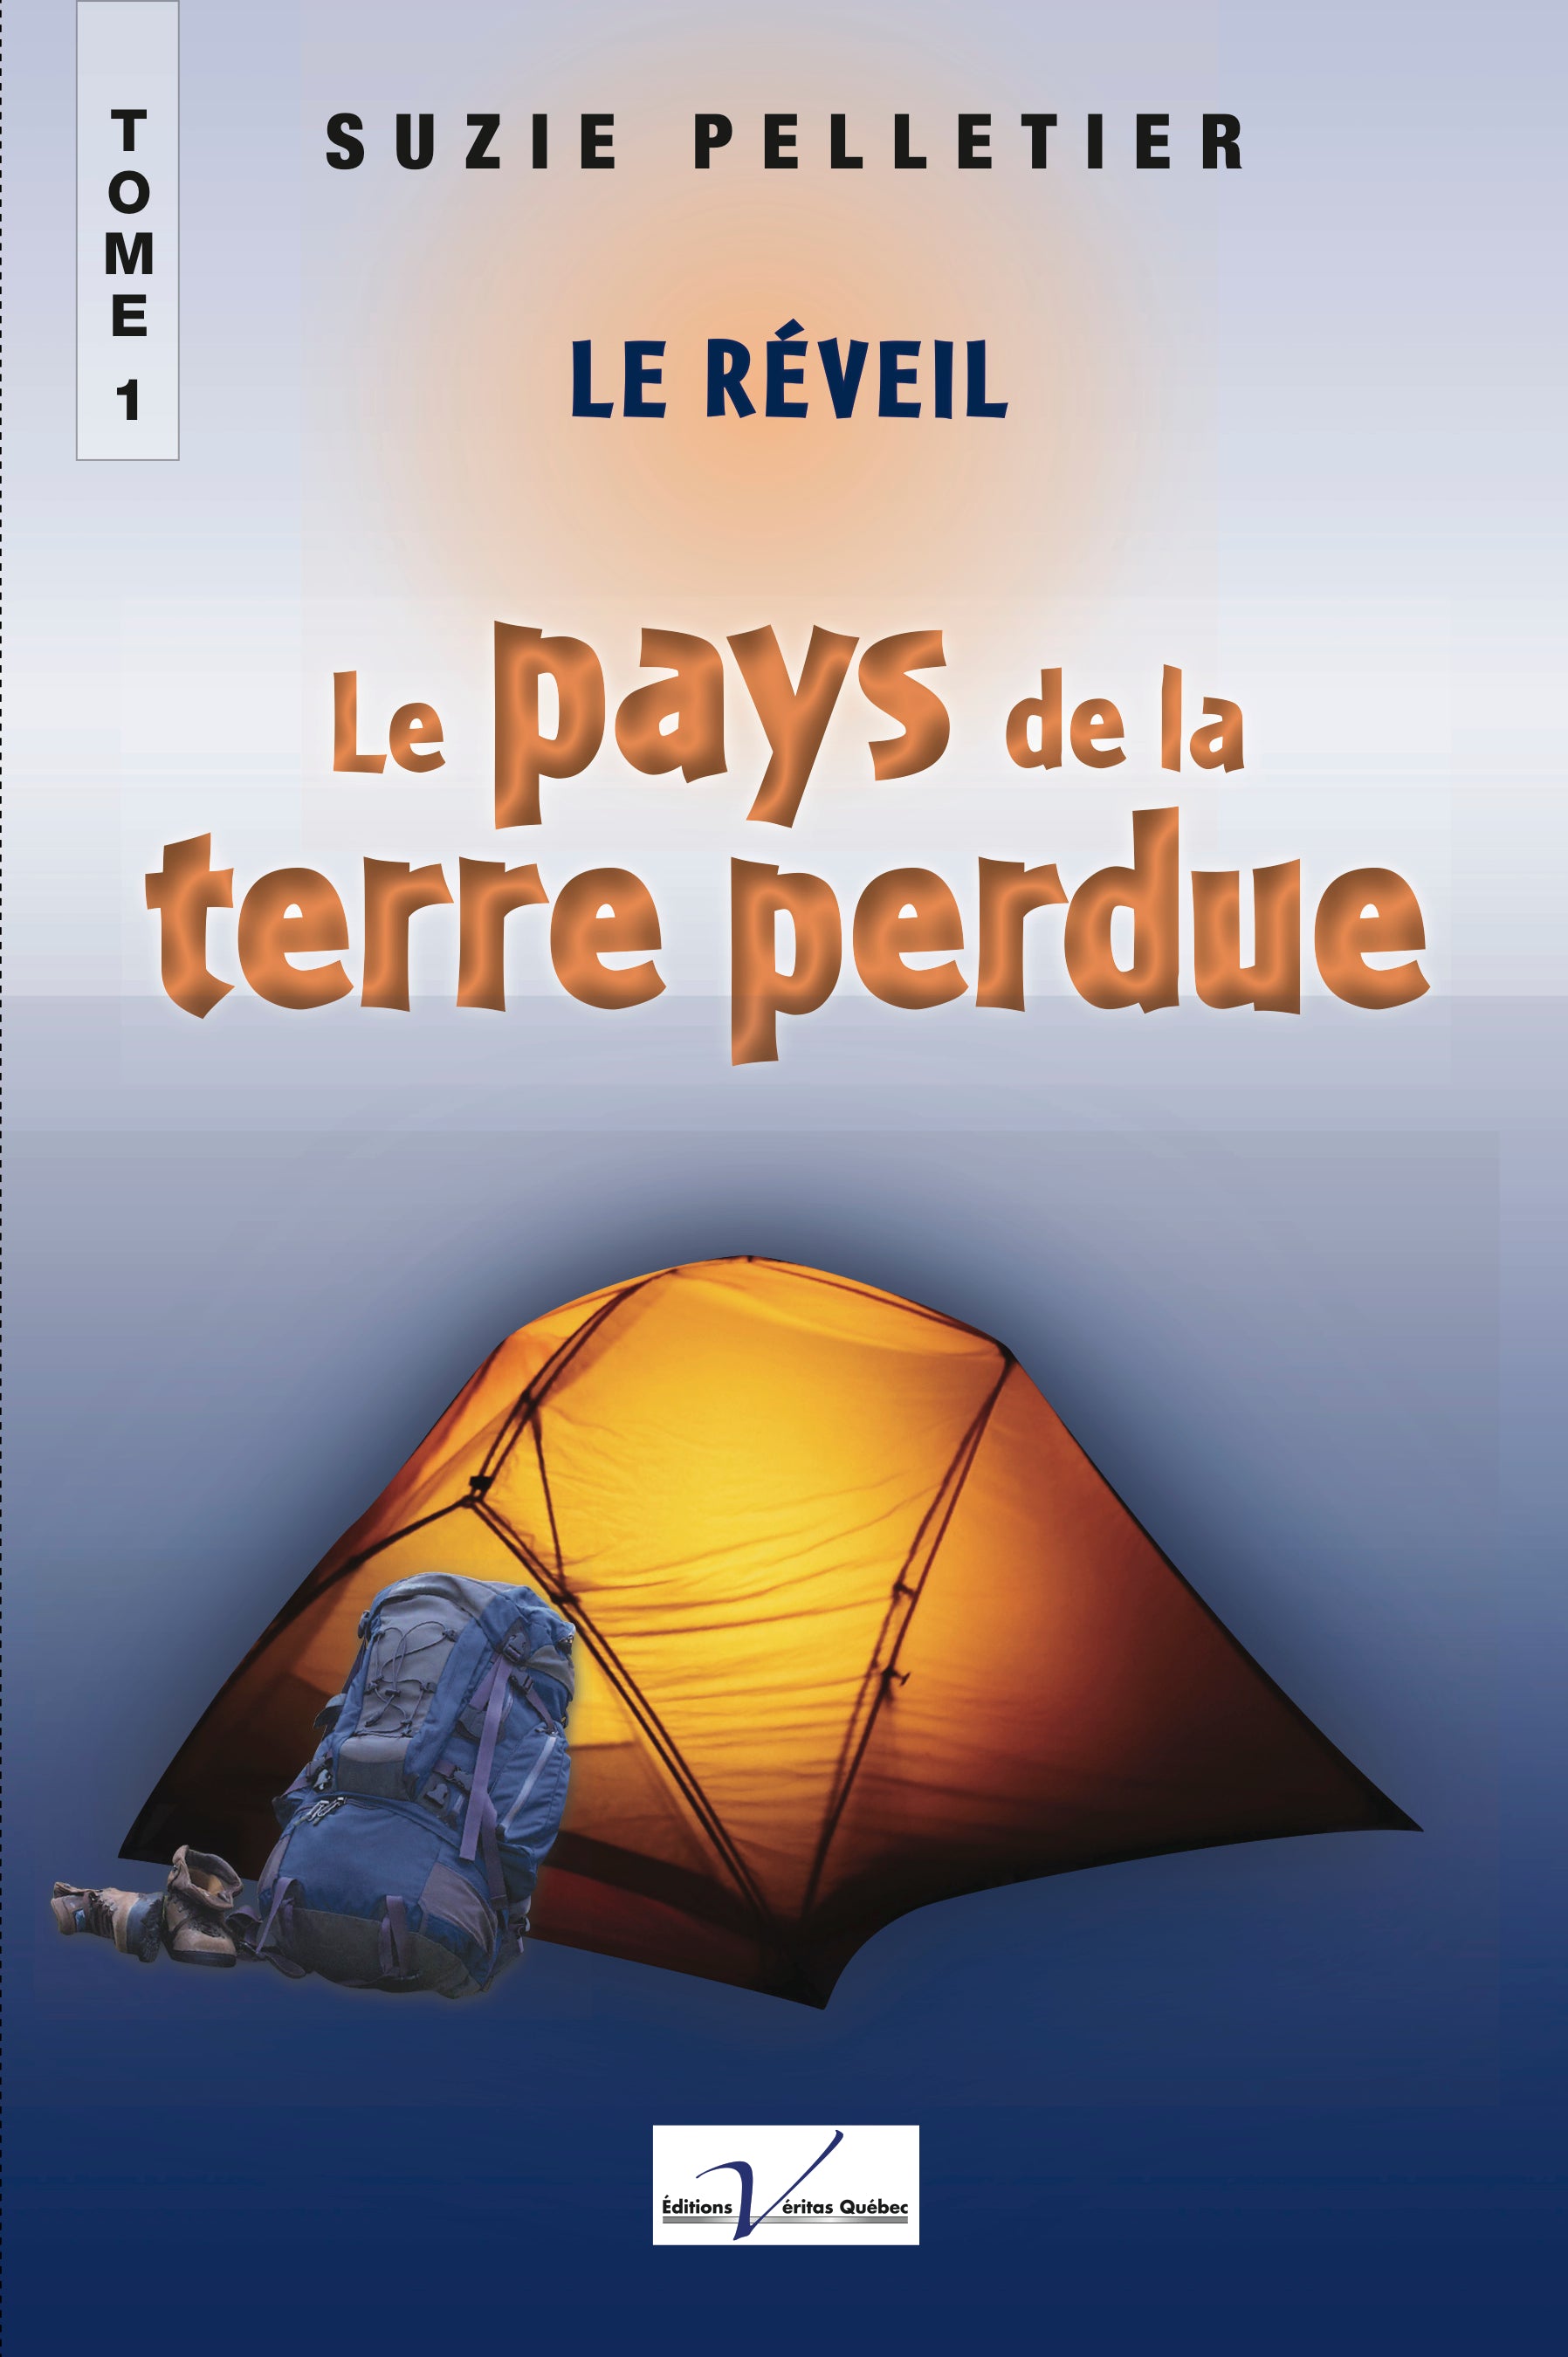 Livre ISBN 2895710546 Le pays de la terre perdue # 1 : Le réveil (Suzie Pelletier)